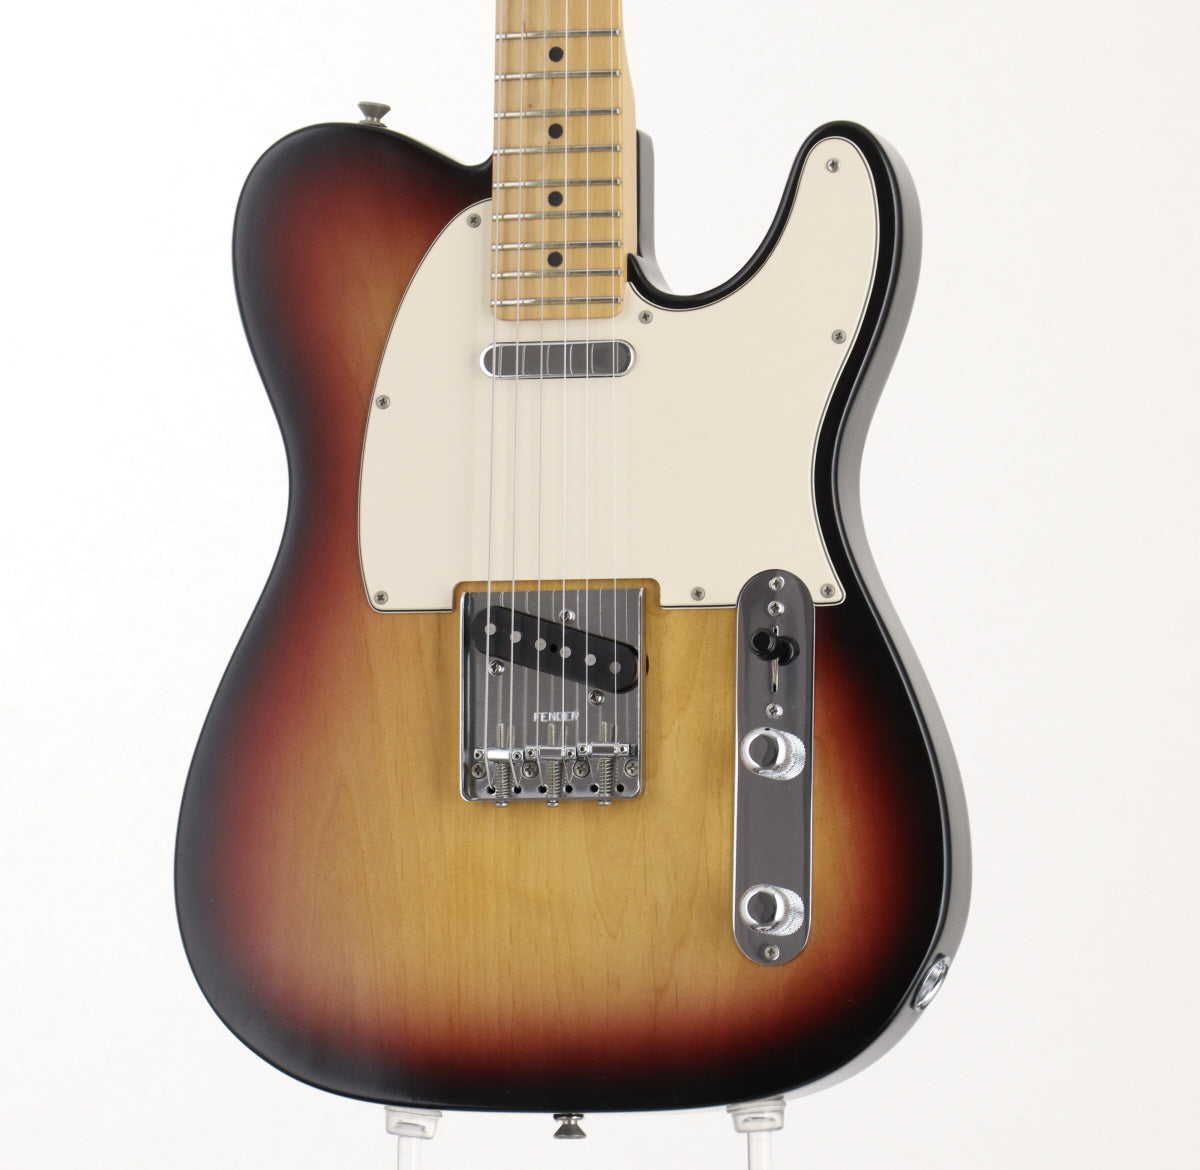 [SN Z3026668] USED Fender / Highway 1 Telecaster 3color Sunburst [06]